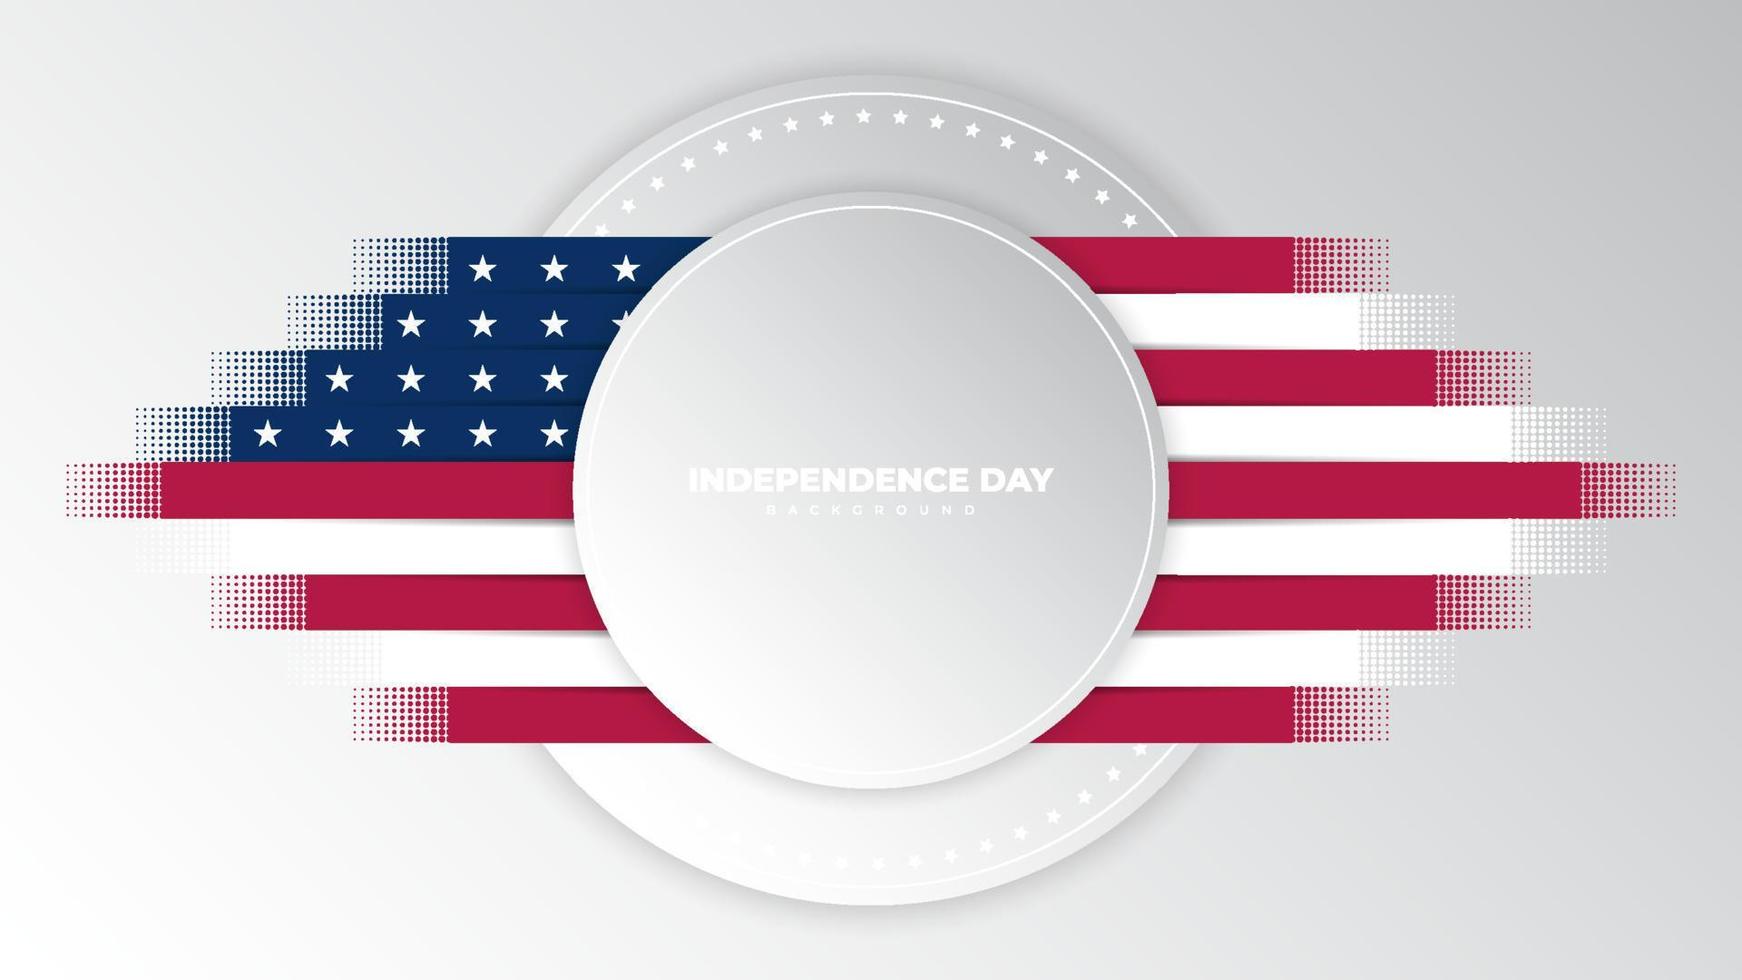 USA självständighetsdagen bakgrundsdesignmall vektor